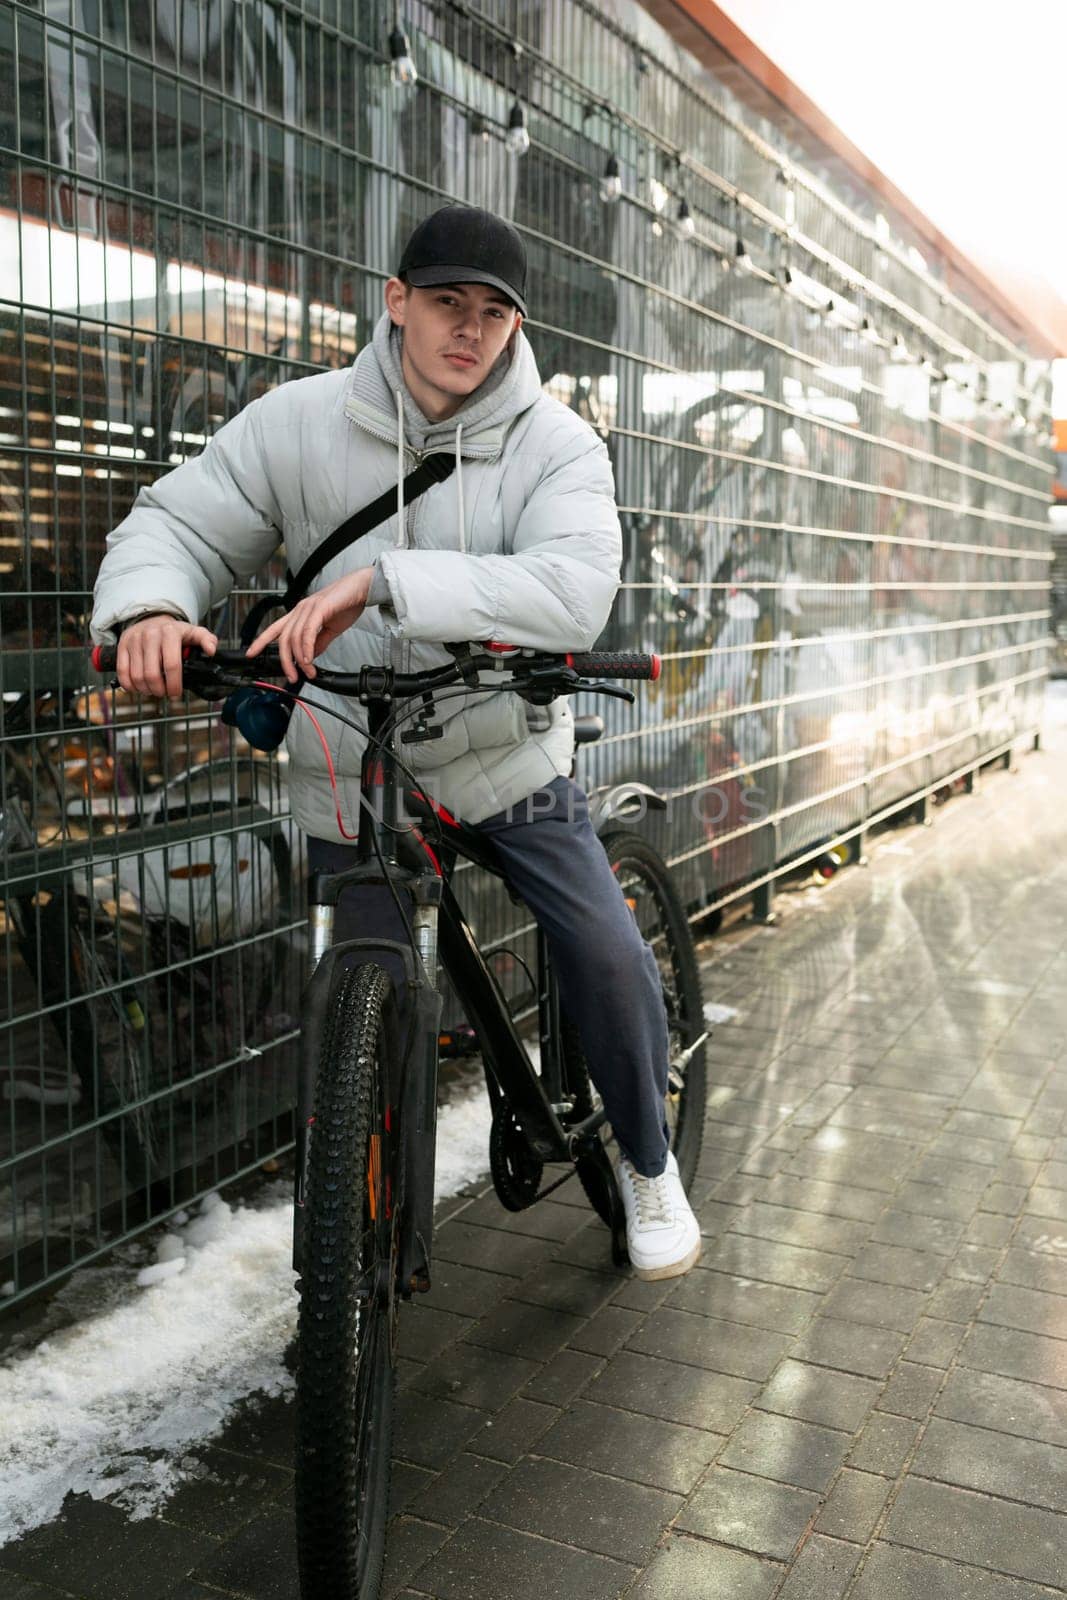 European man takes a bike ride through the city by TRMK